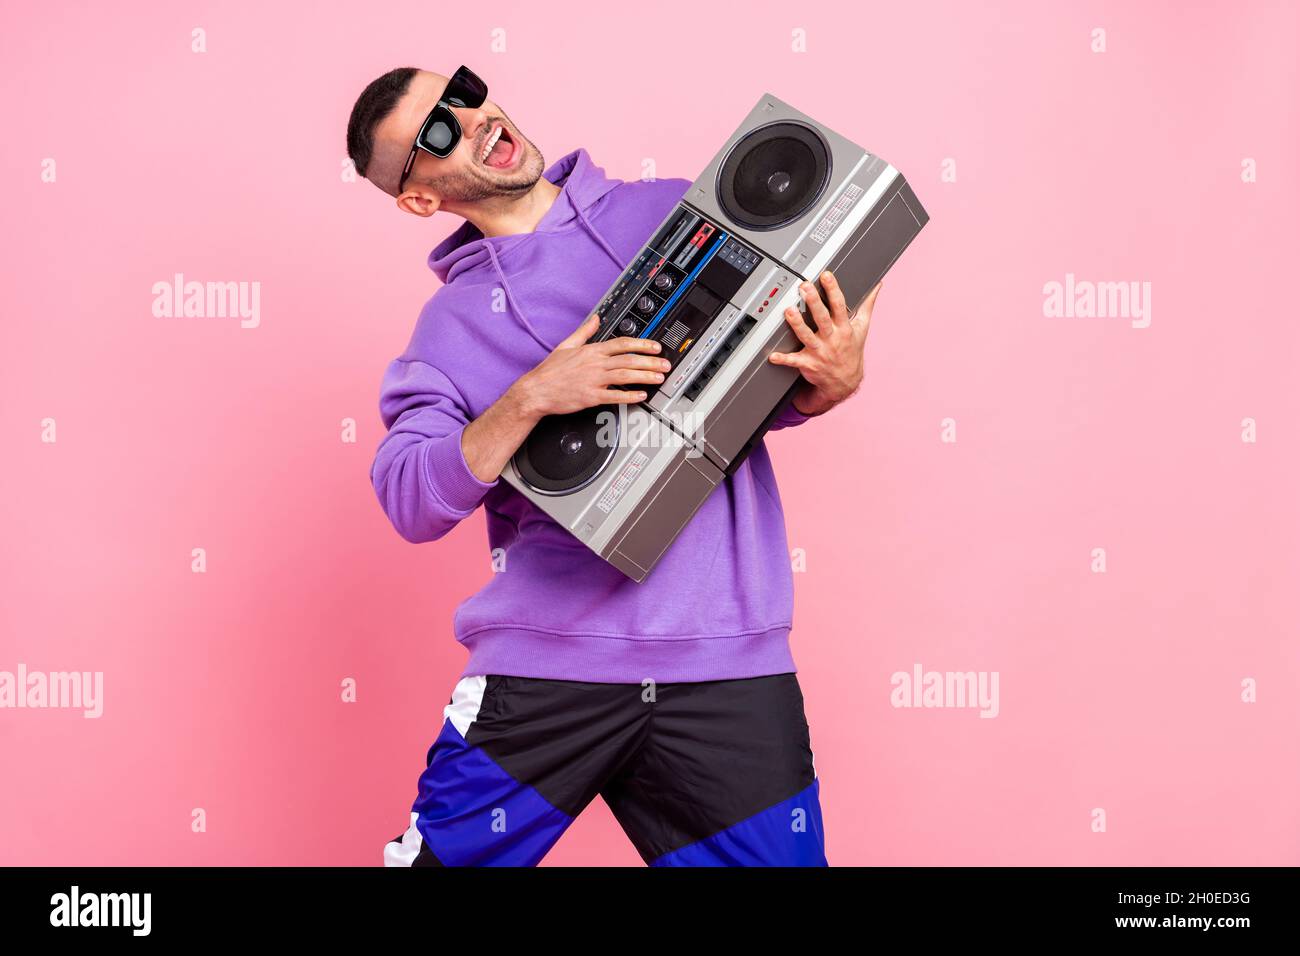 Photo du jeune garçon cool brunet boom box porter des lunettes pull à  capuche isolé sur fond rose Photo Stock - Alamy